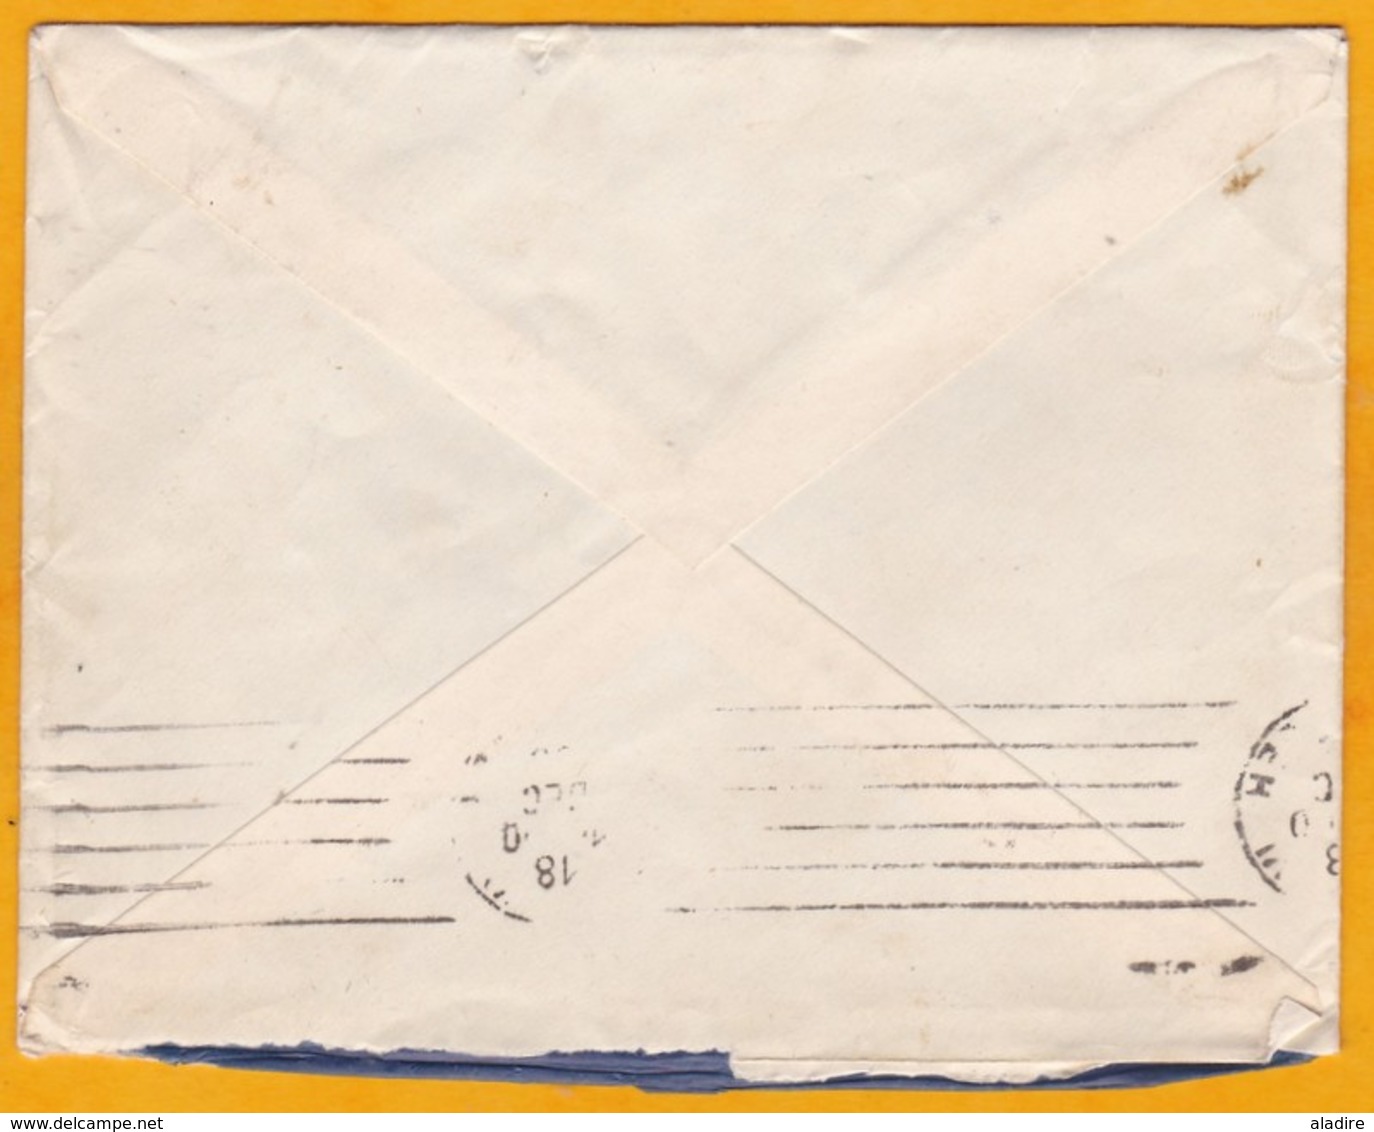 1935 - Enveloppe De Djibouti, C F Somalis Vers Paris, France - Affrt  55 C - Six Timbres - Cad Arrivée - Brieven En Documenten